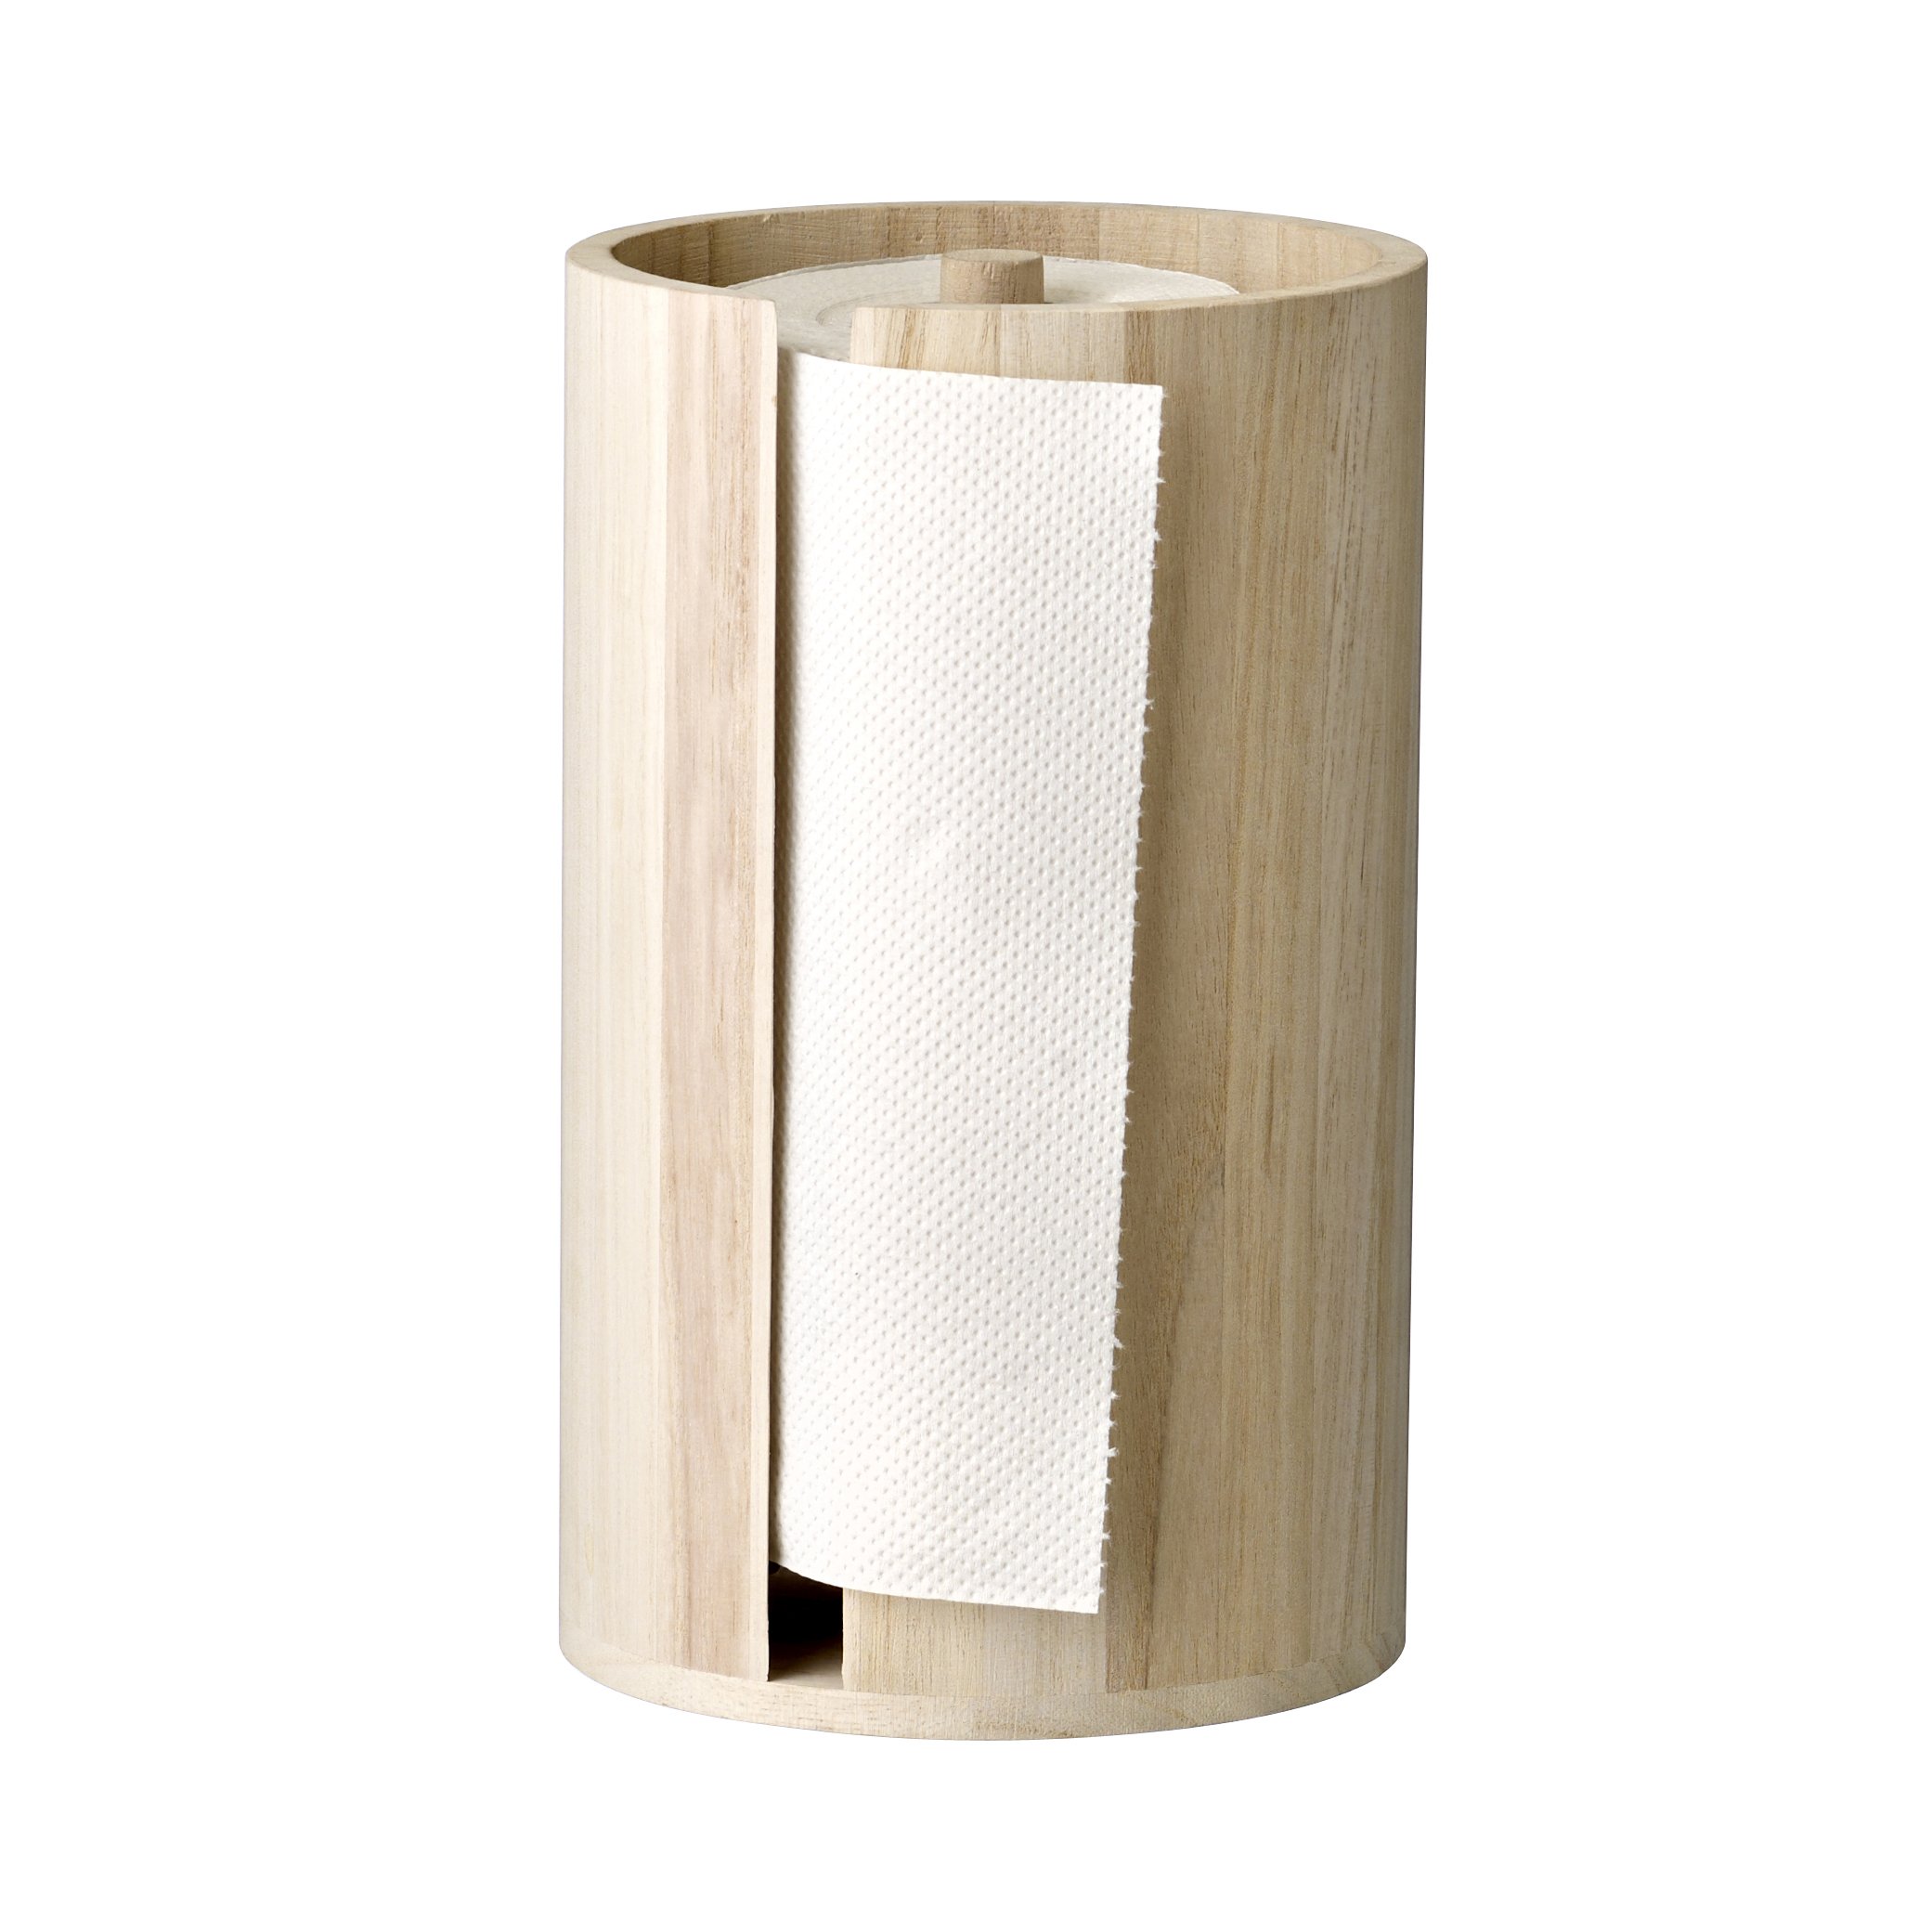 Soporte porta rollo papel de cocina de madera Cocina Utensilios